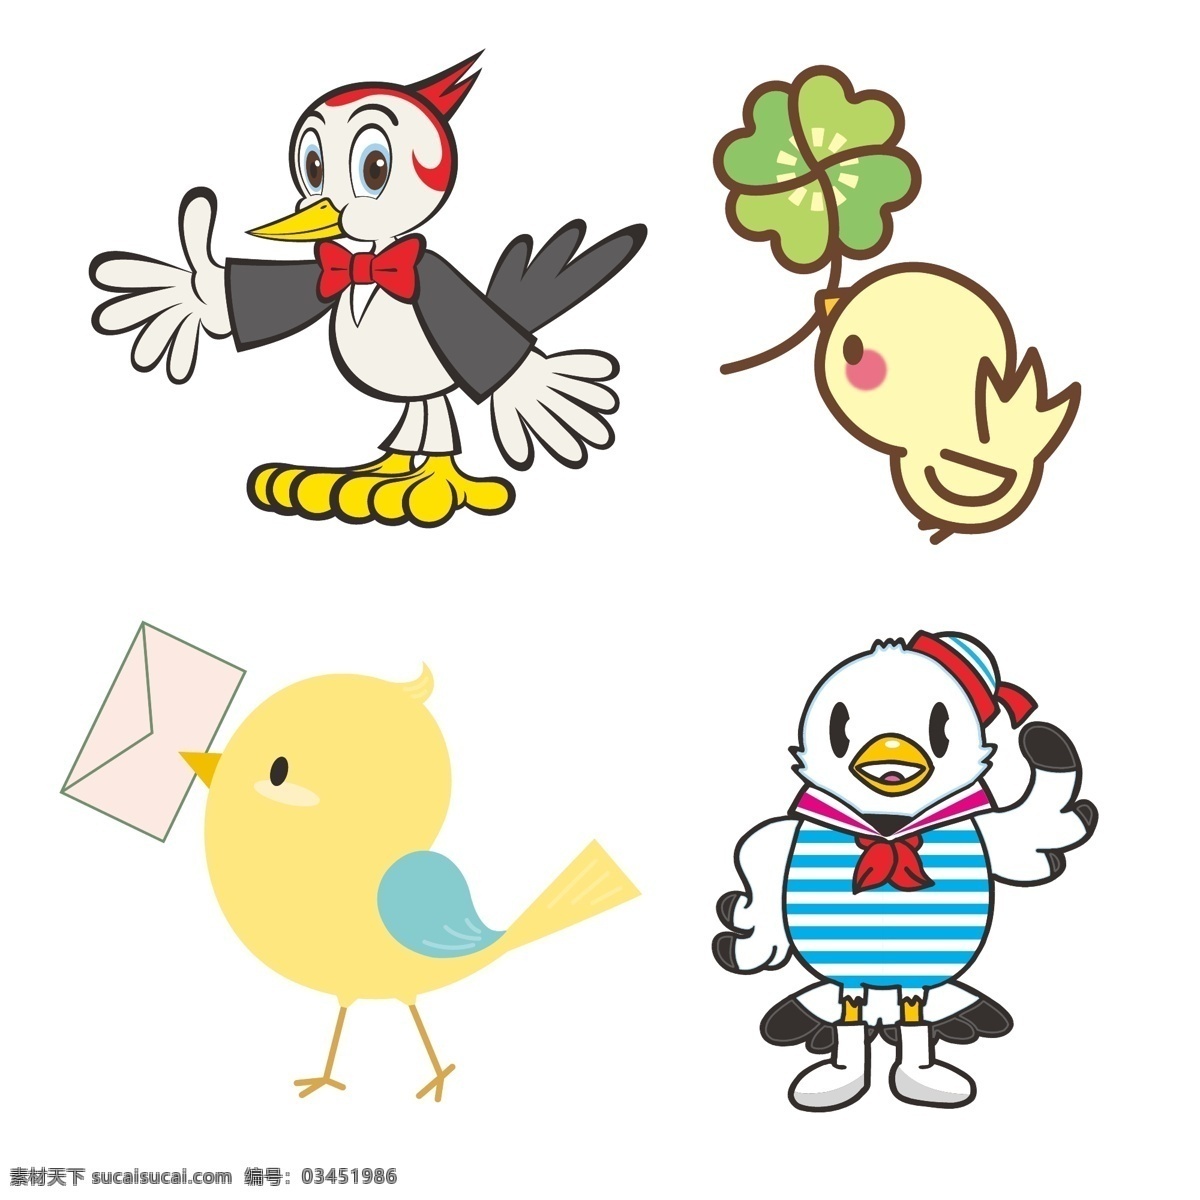 动物卡通图片 鸟类 小鸟 啄木鸟 海鸥 动物 卡通 可爱 动漫卡通插图 动漫动画